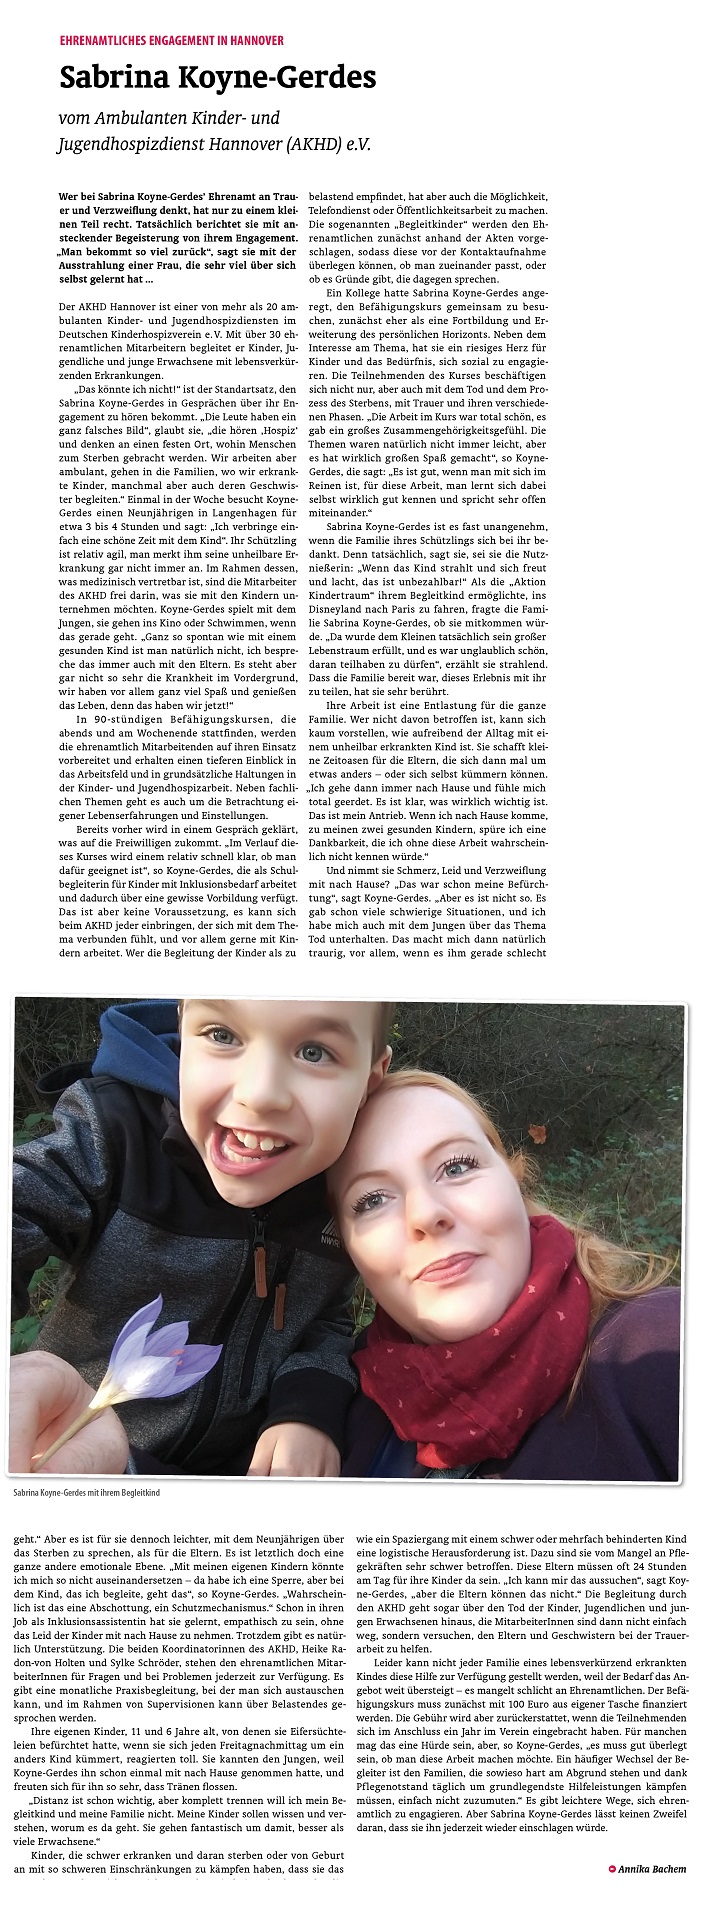 Artikel des Stadtkind-Magazins über das Engagement von Sabrina Koyne-Gerdes, die sich beim Ambulanten Kinder- und Jugendhospizdienst engagiert